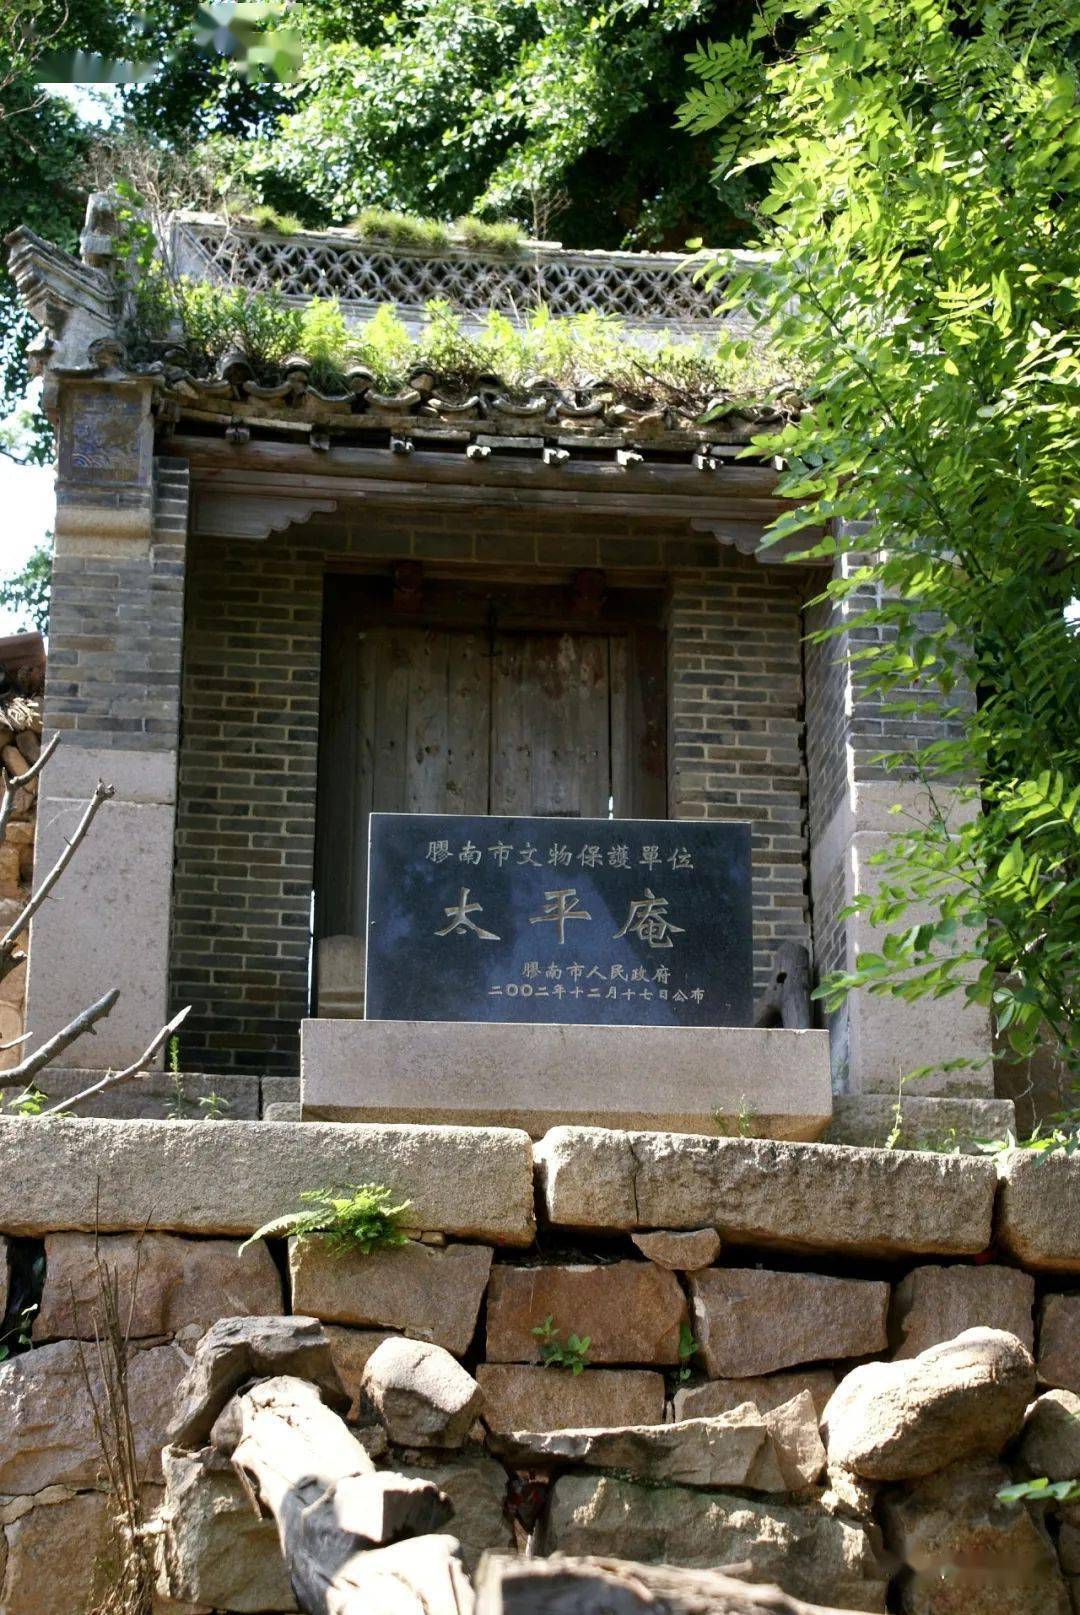 太平庵遗址除了历史文化资源,小珠山还拥有众多造型奇特的山石,以主峰